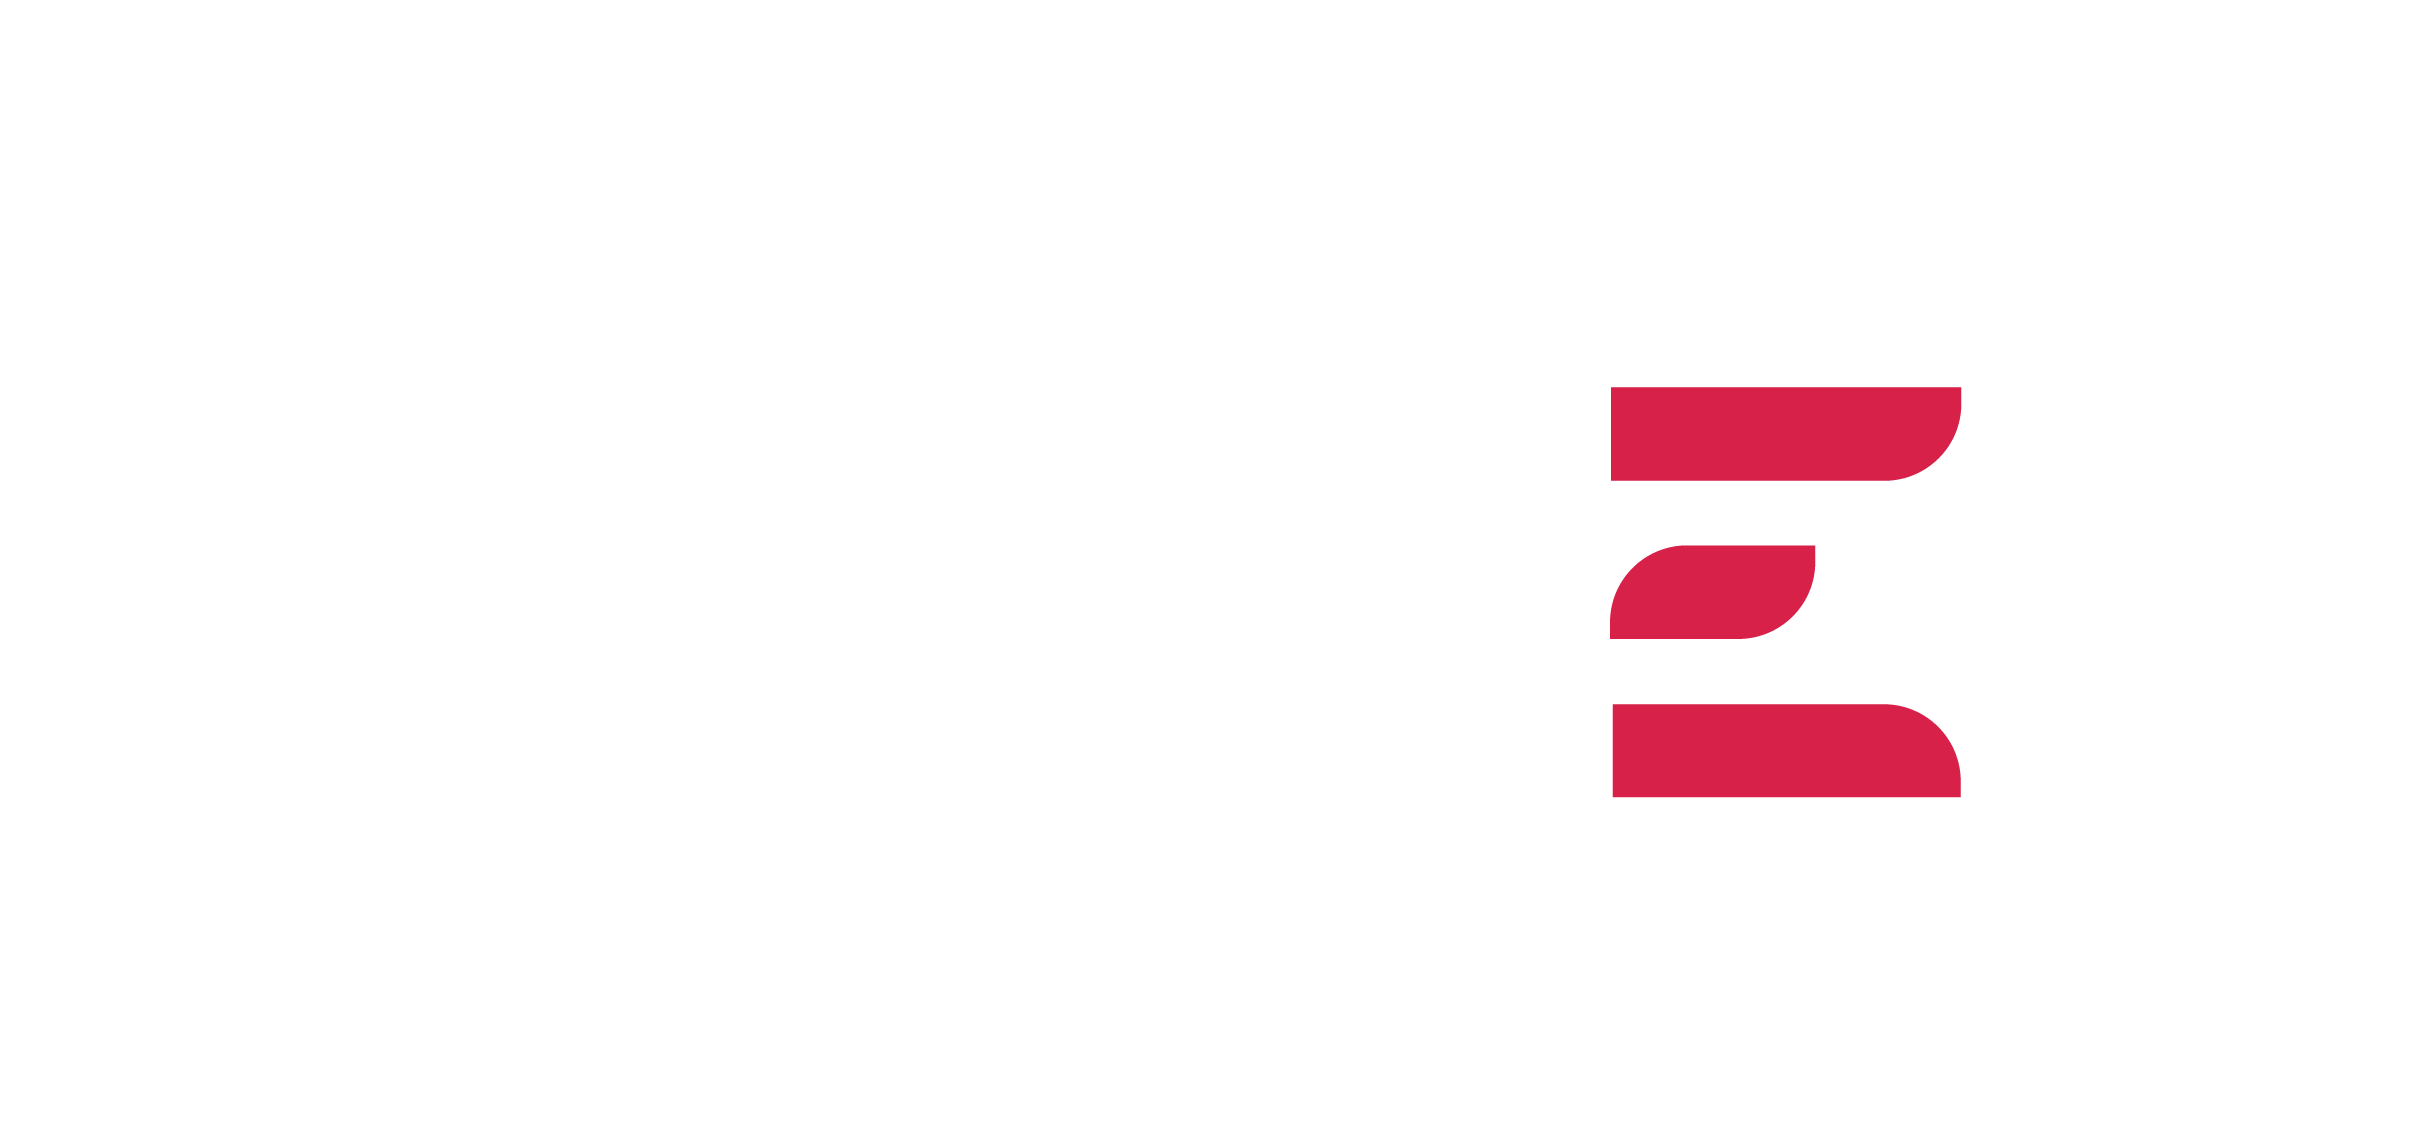 Logotipo Grupo Pusler Blanco